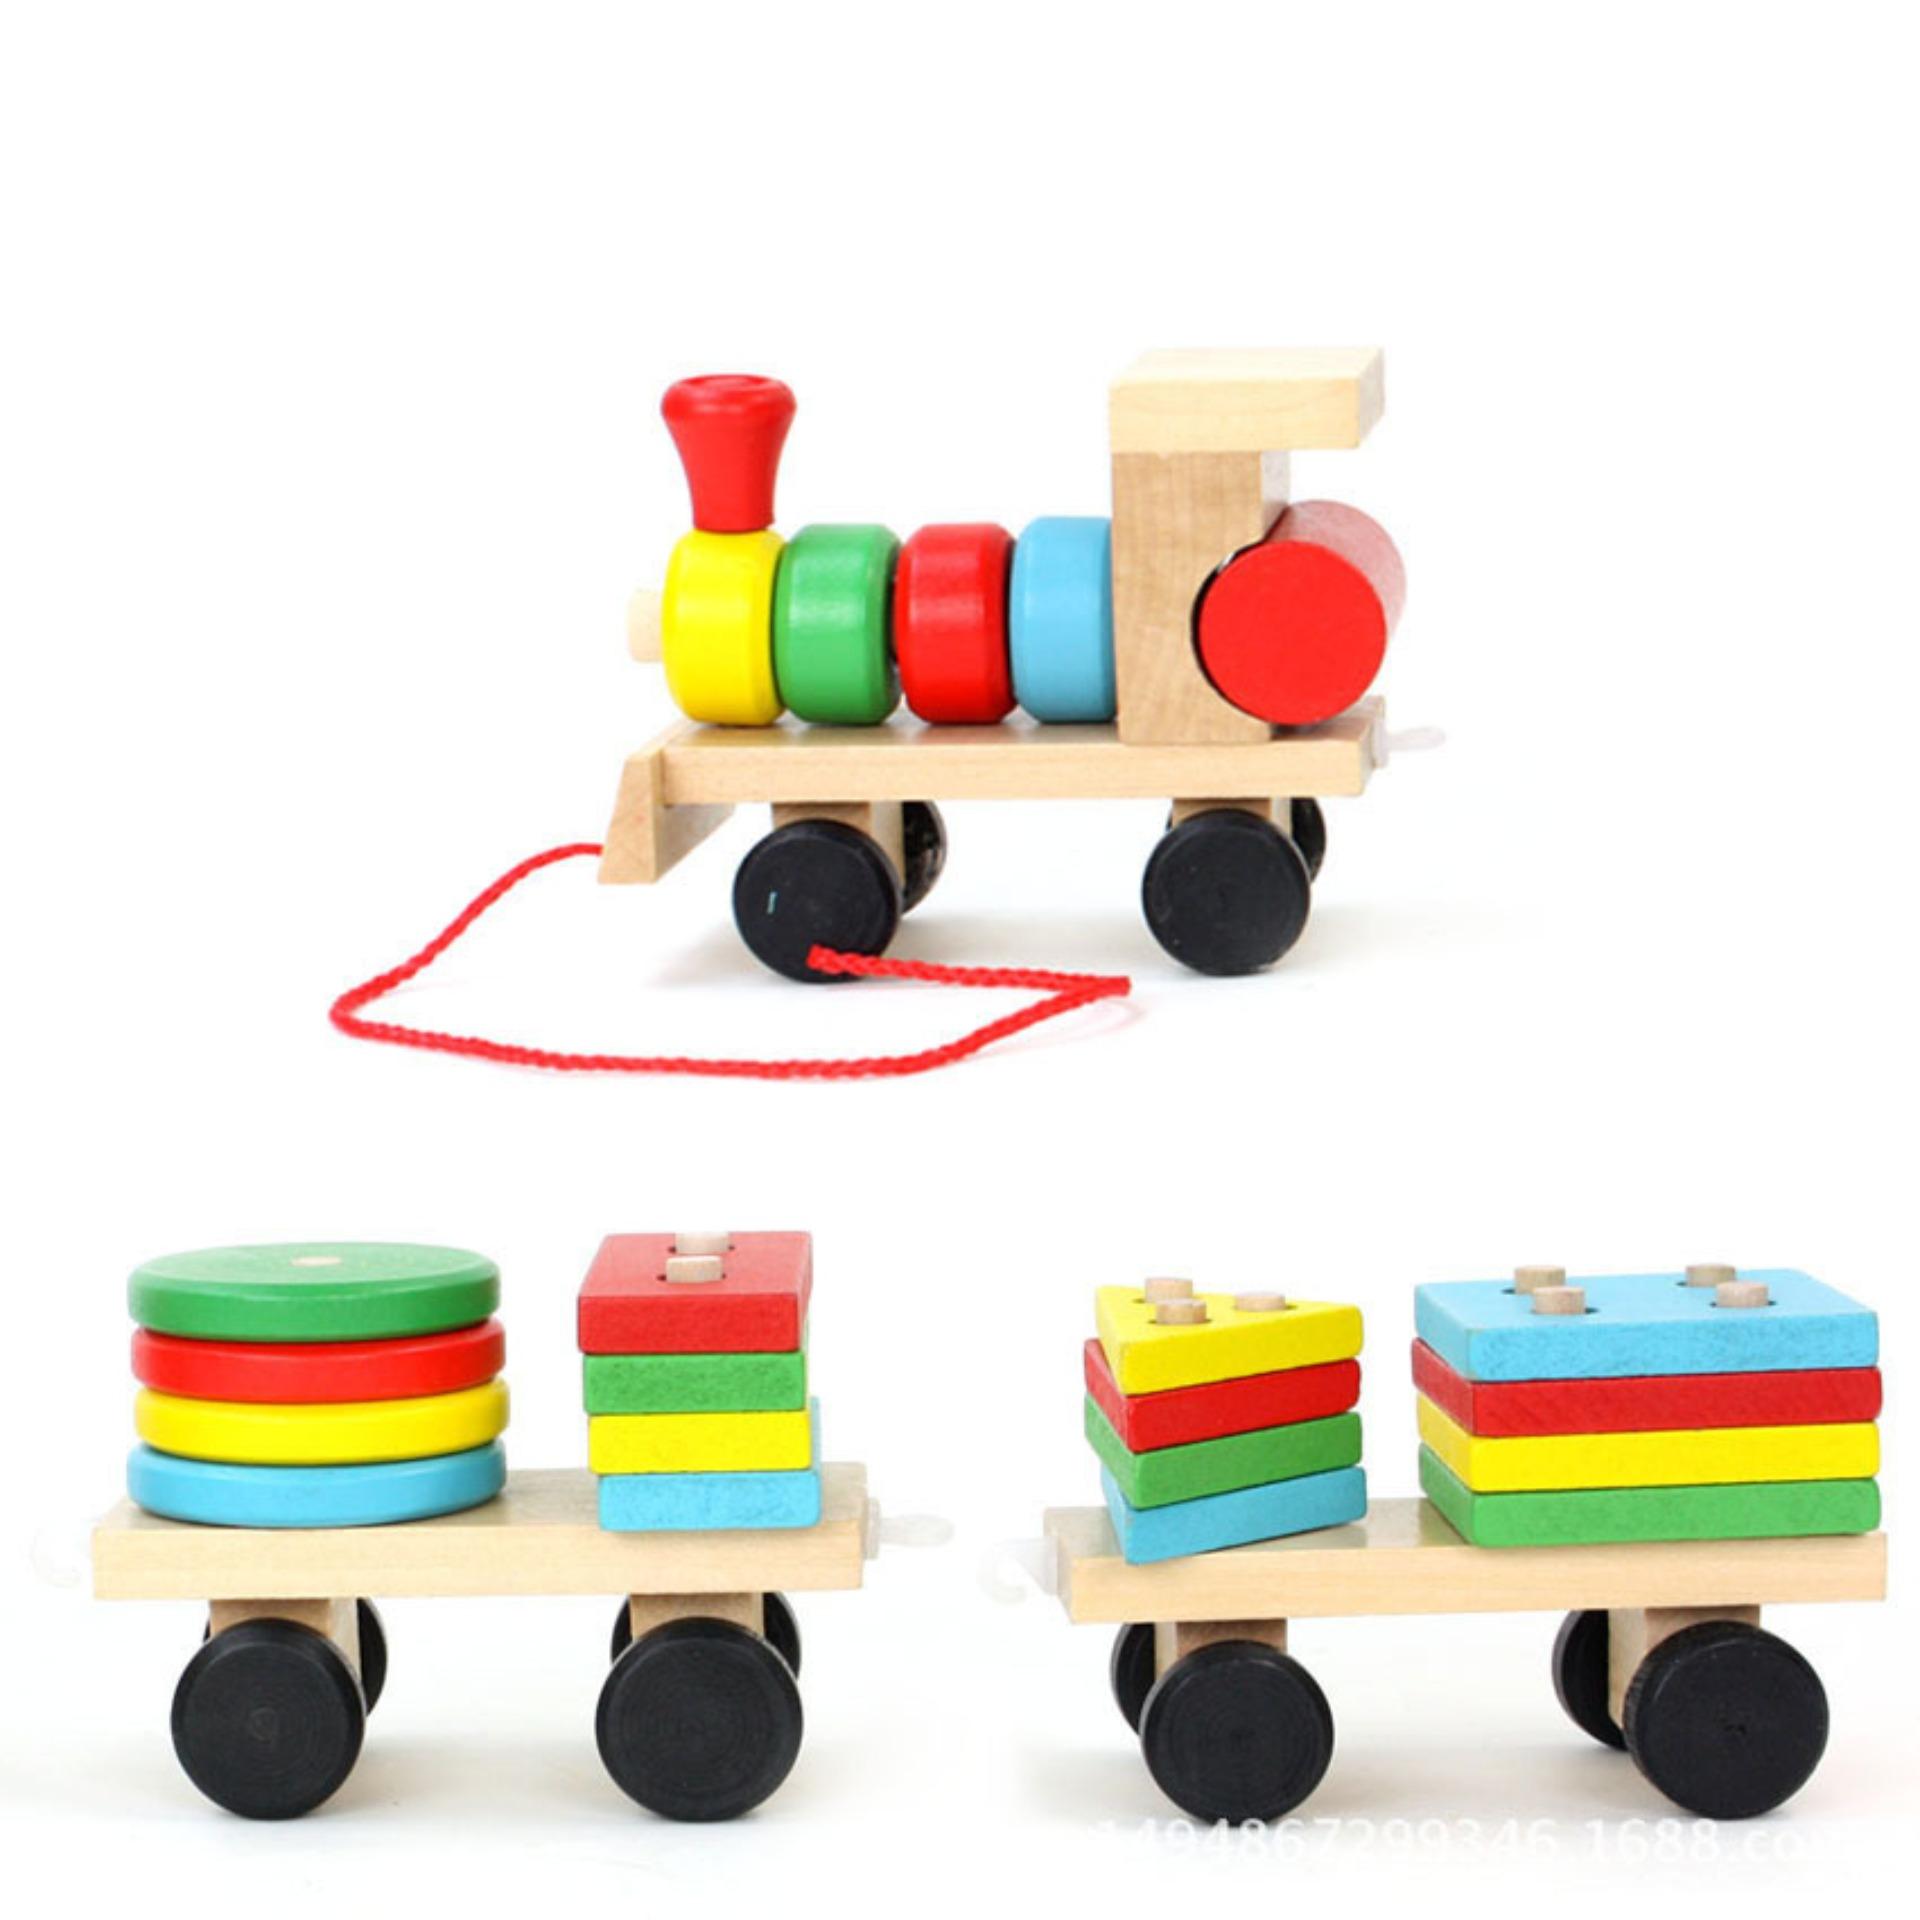 Đồ chơi đoàn tàu hỏa thả hình 16 khối gỗ phát triển tư duy cho bé